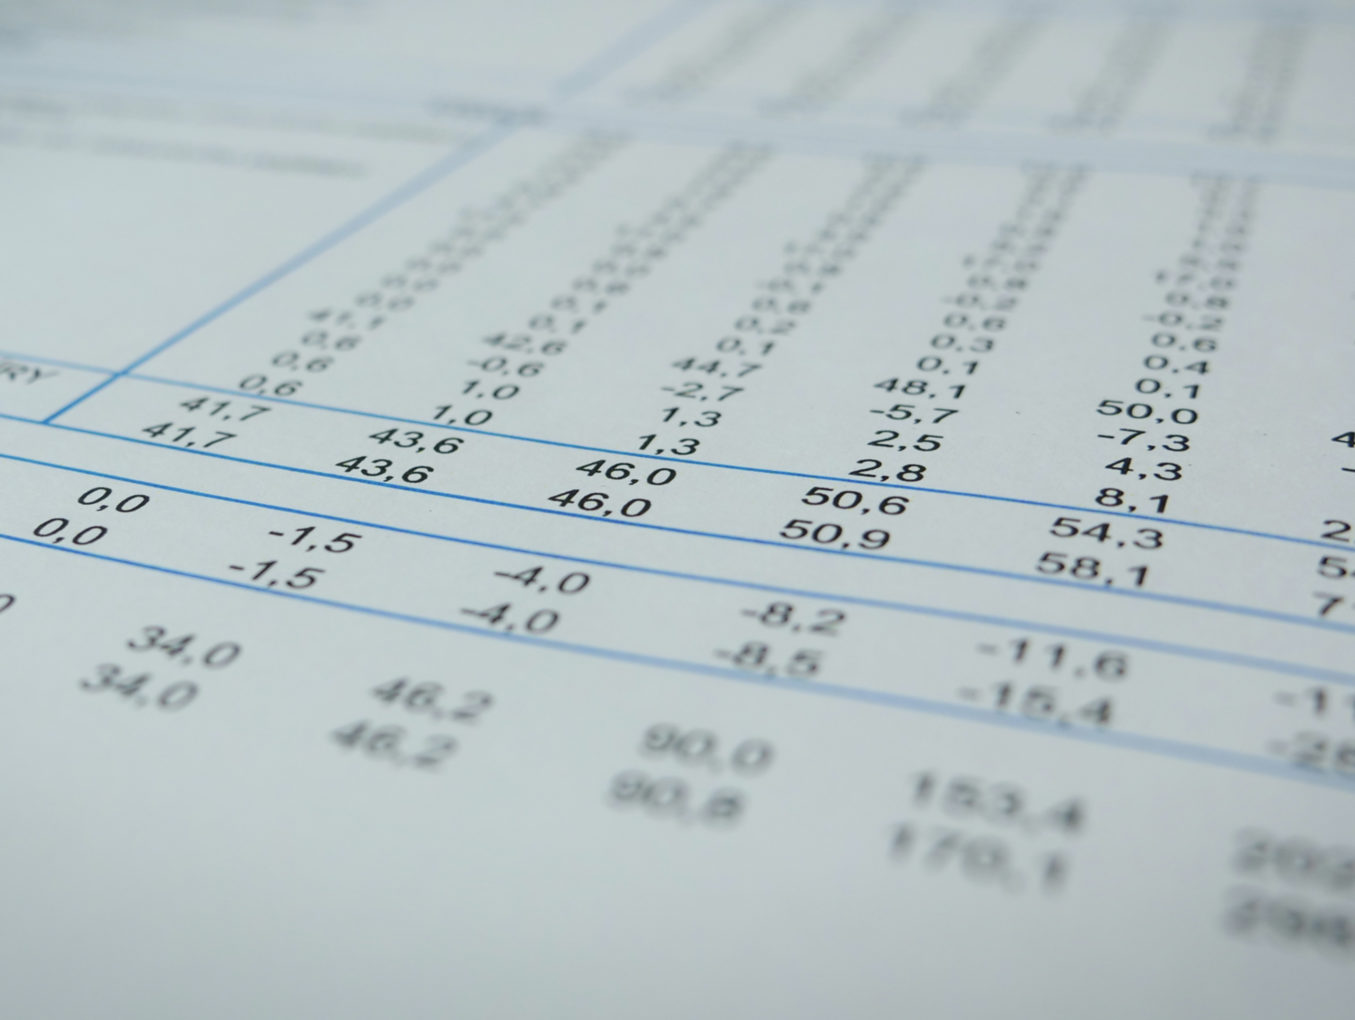 Výpočty ÚNRR ukázaly, jaký dopad na veřejné finance by měla různá nastavení základních parametrů daně z příjmu fyzických osob. Podívejte se na přehlednou tabulku.